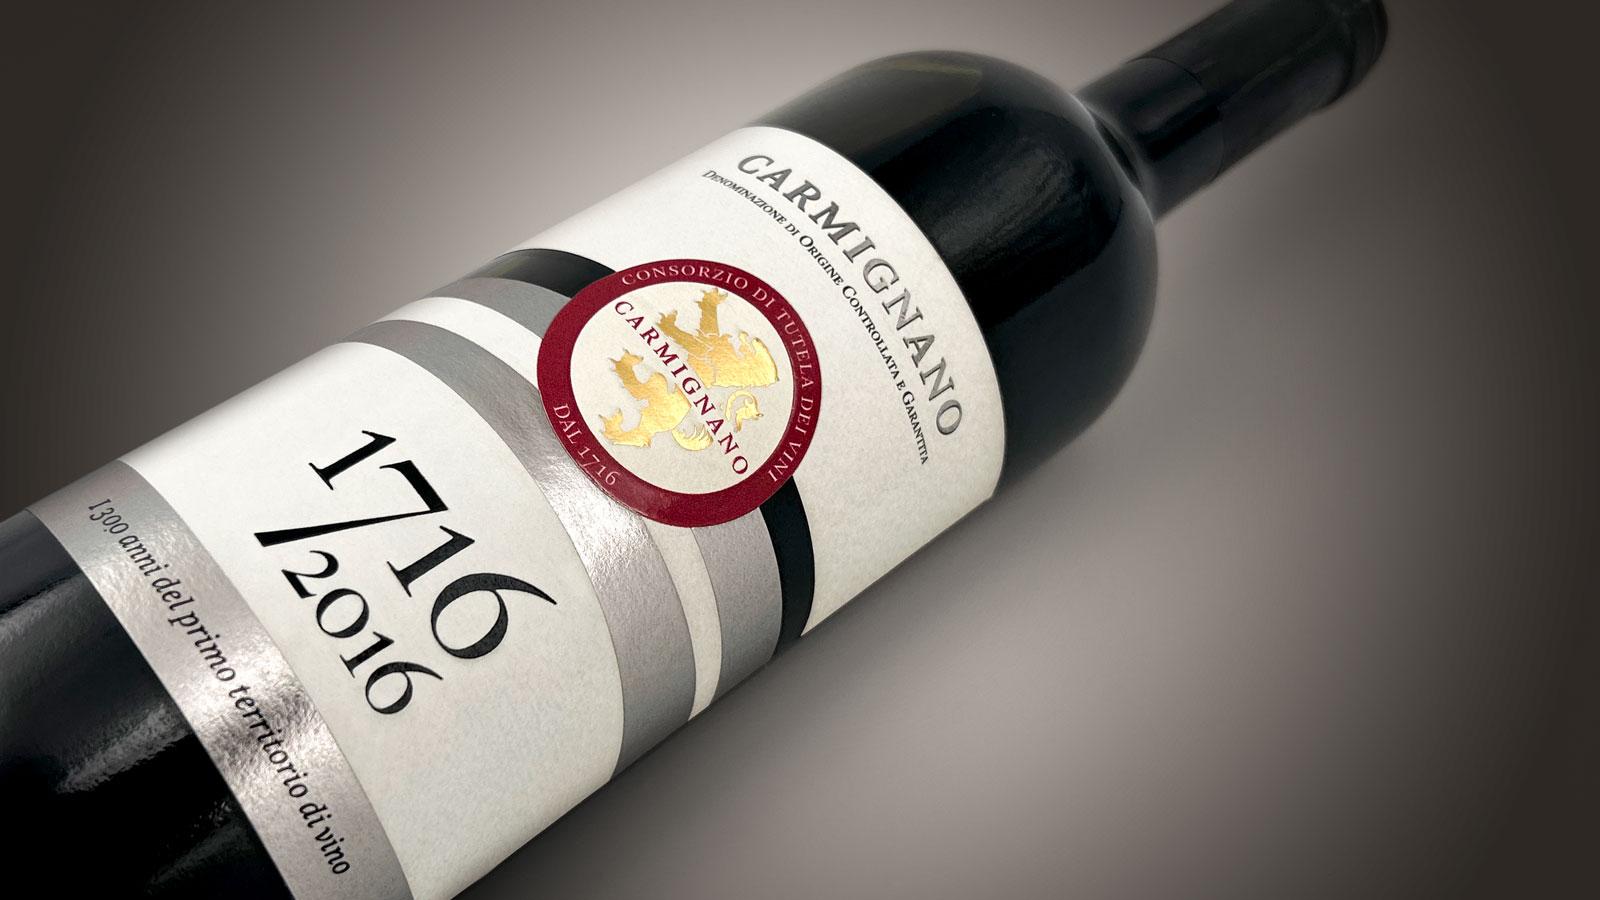 Bottiglia di vino con etichetta celebrativa dei 300 anni del Carmignano Docg